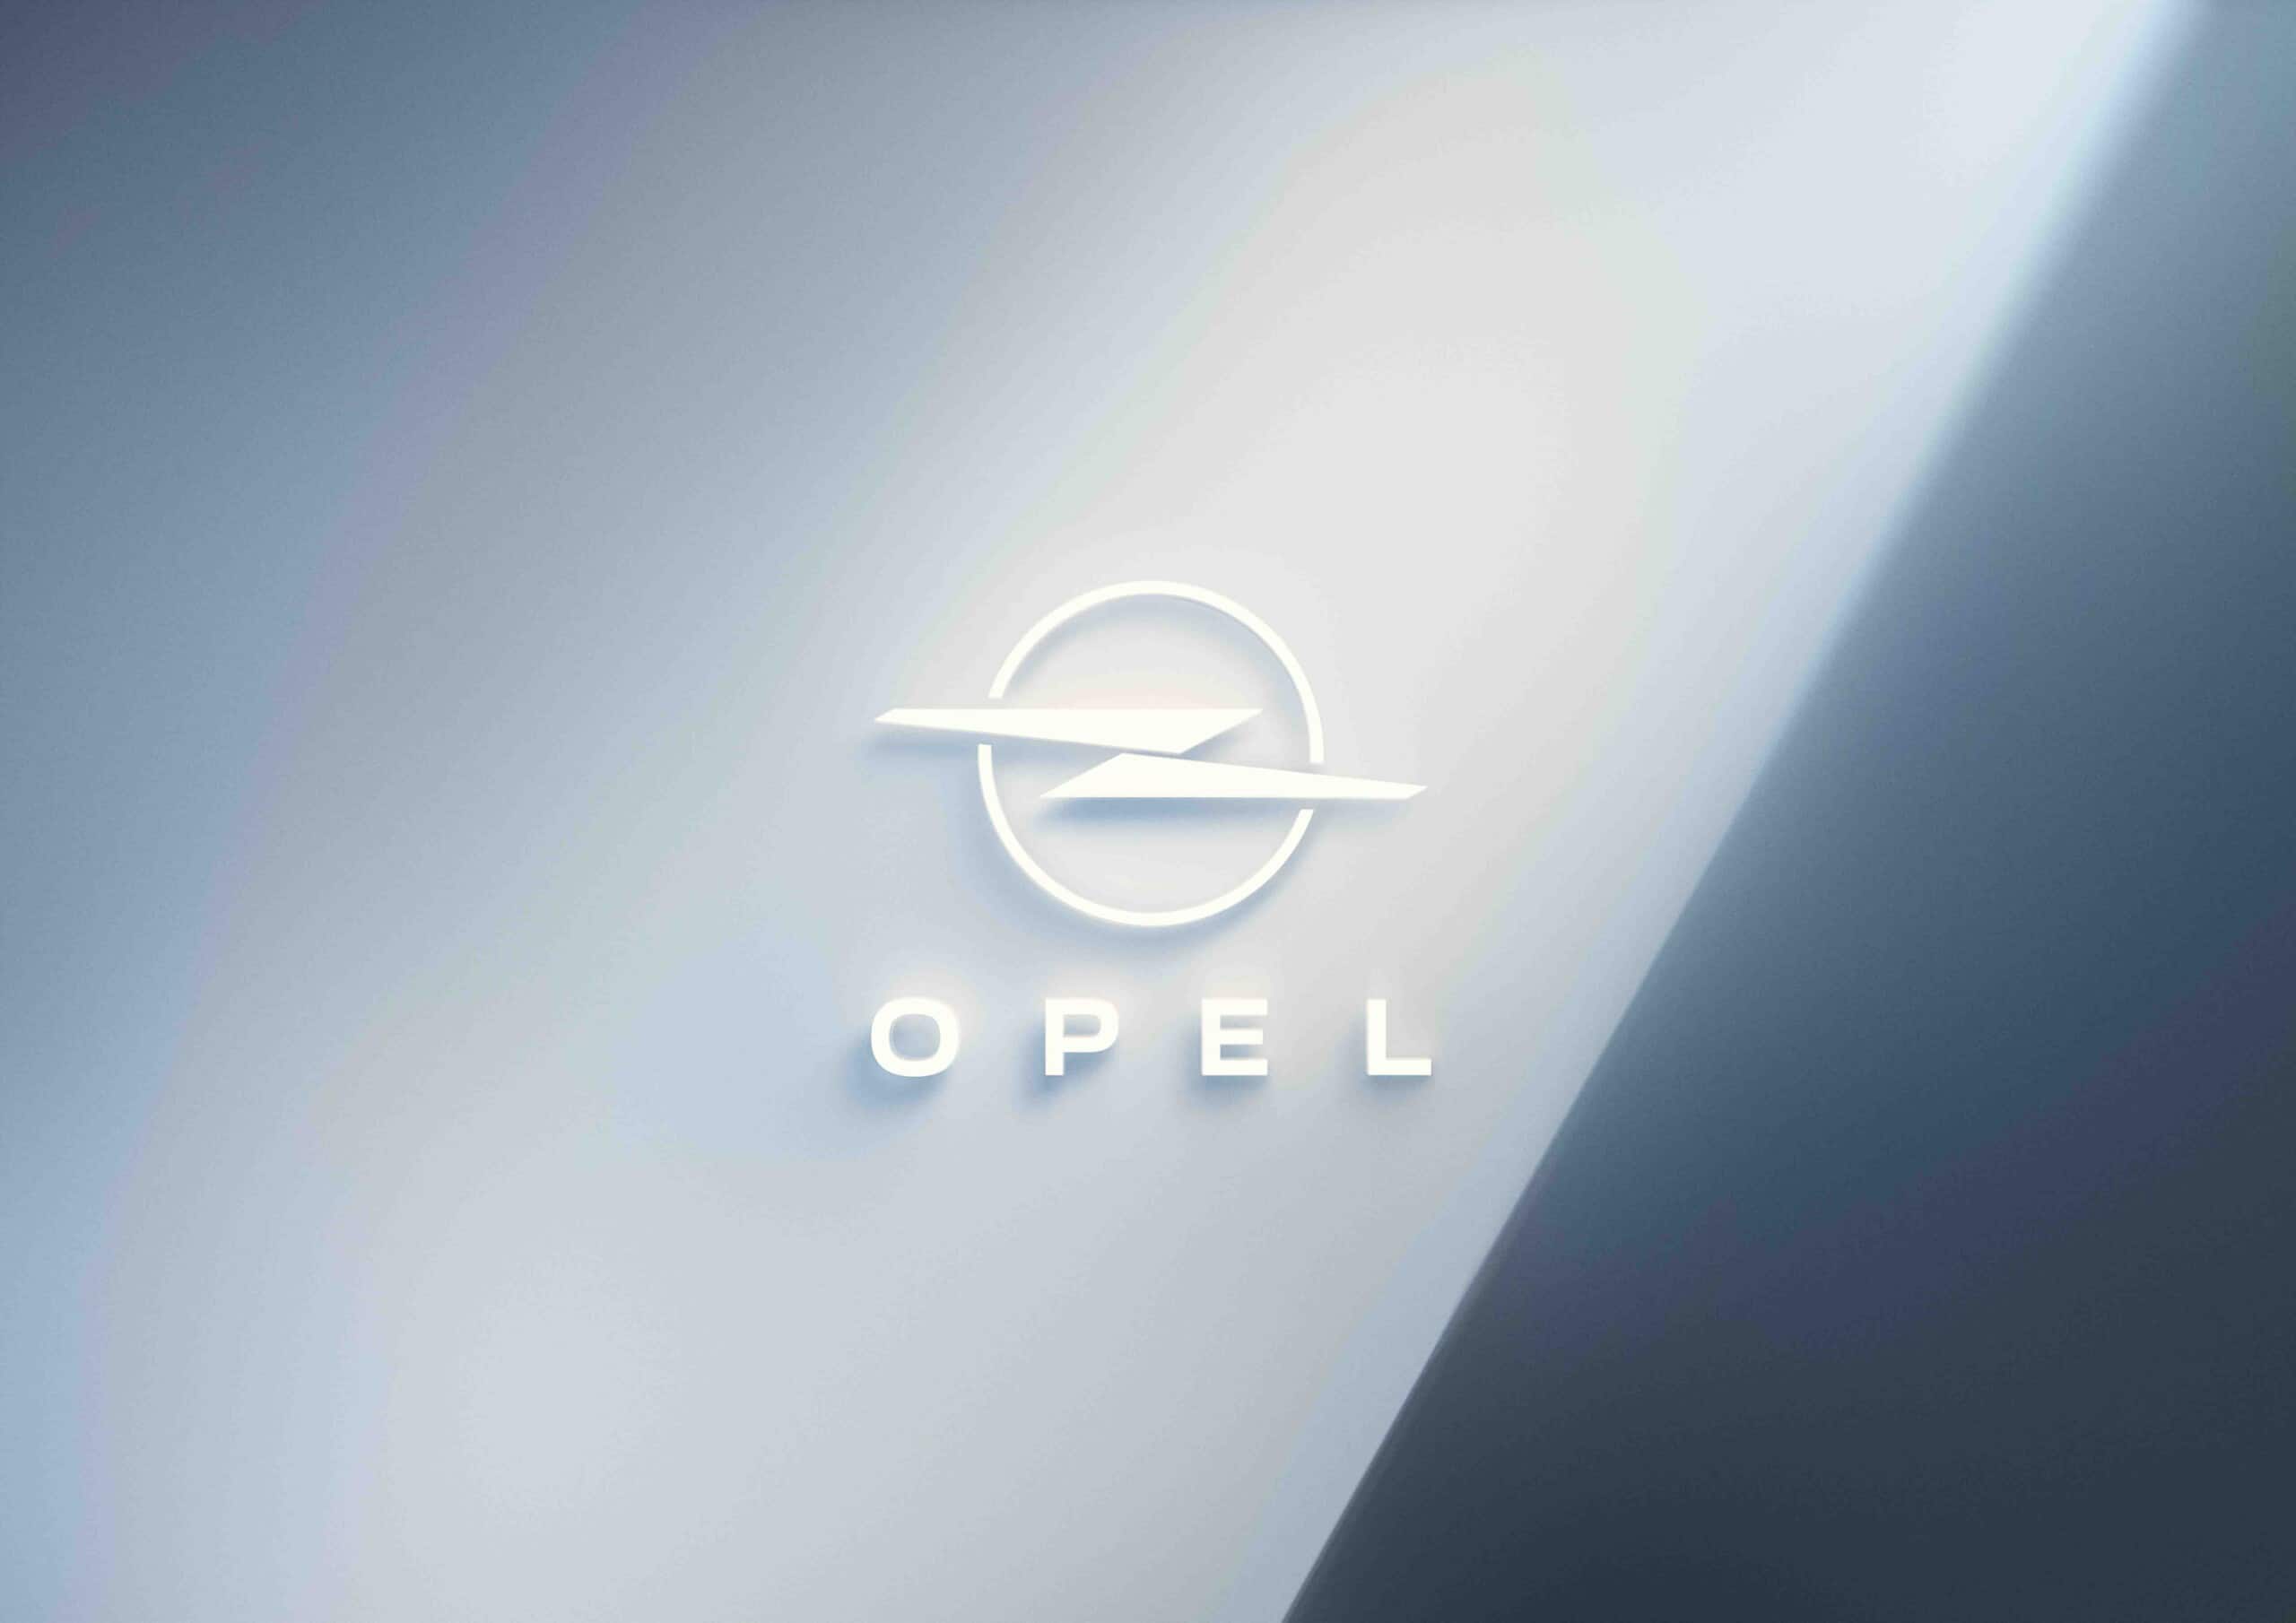 Nuovo logo Opel: il Blitz cambia forma così